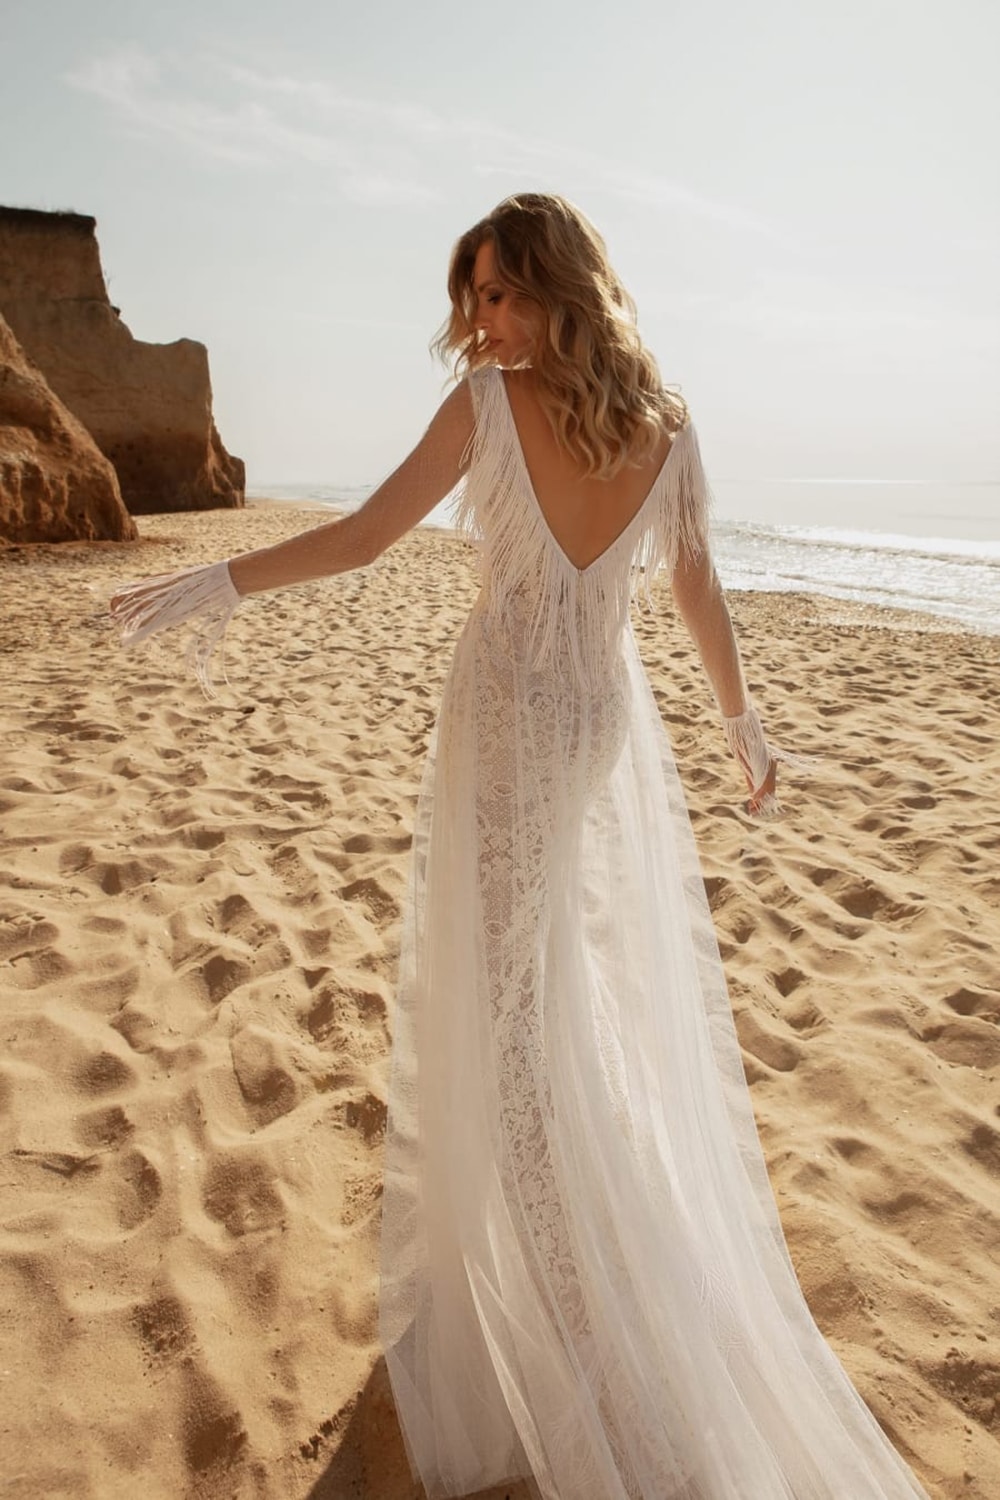 Geometrie Vertrouwen op Passend Bohemian trouwjurk kopen: vind de jurk die bij jou past